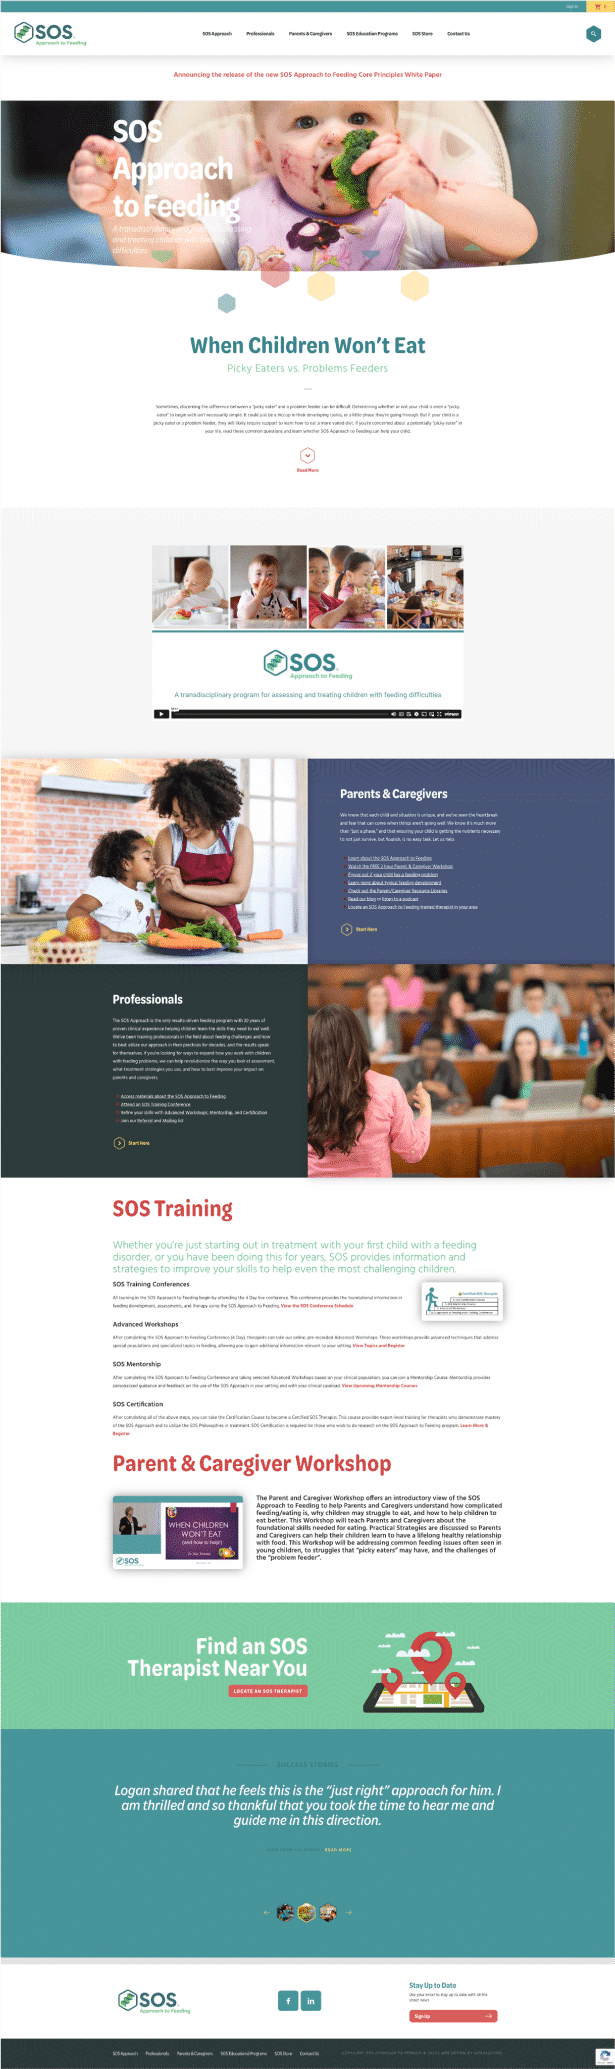 SOS Website Design and Development by Webolutions Digital Marketing Agency Denver, Colorado 3